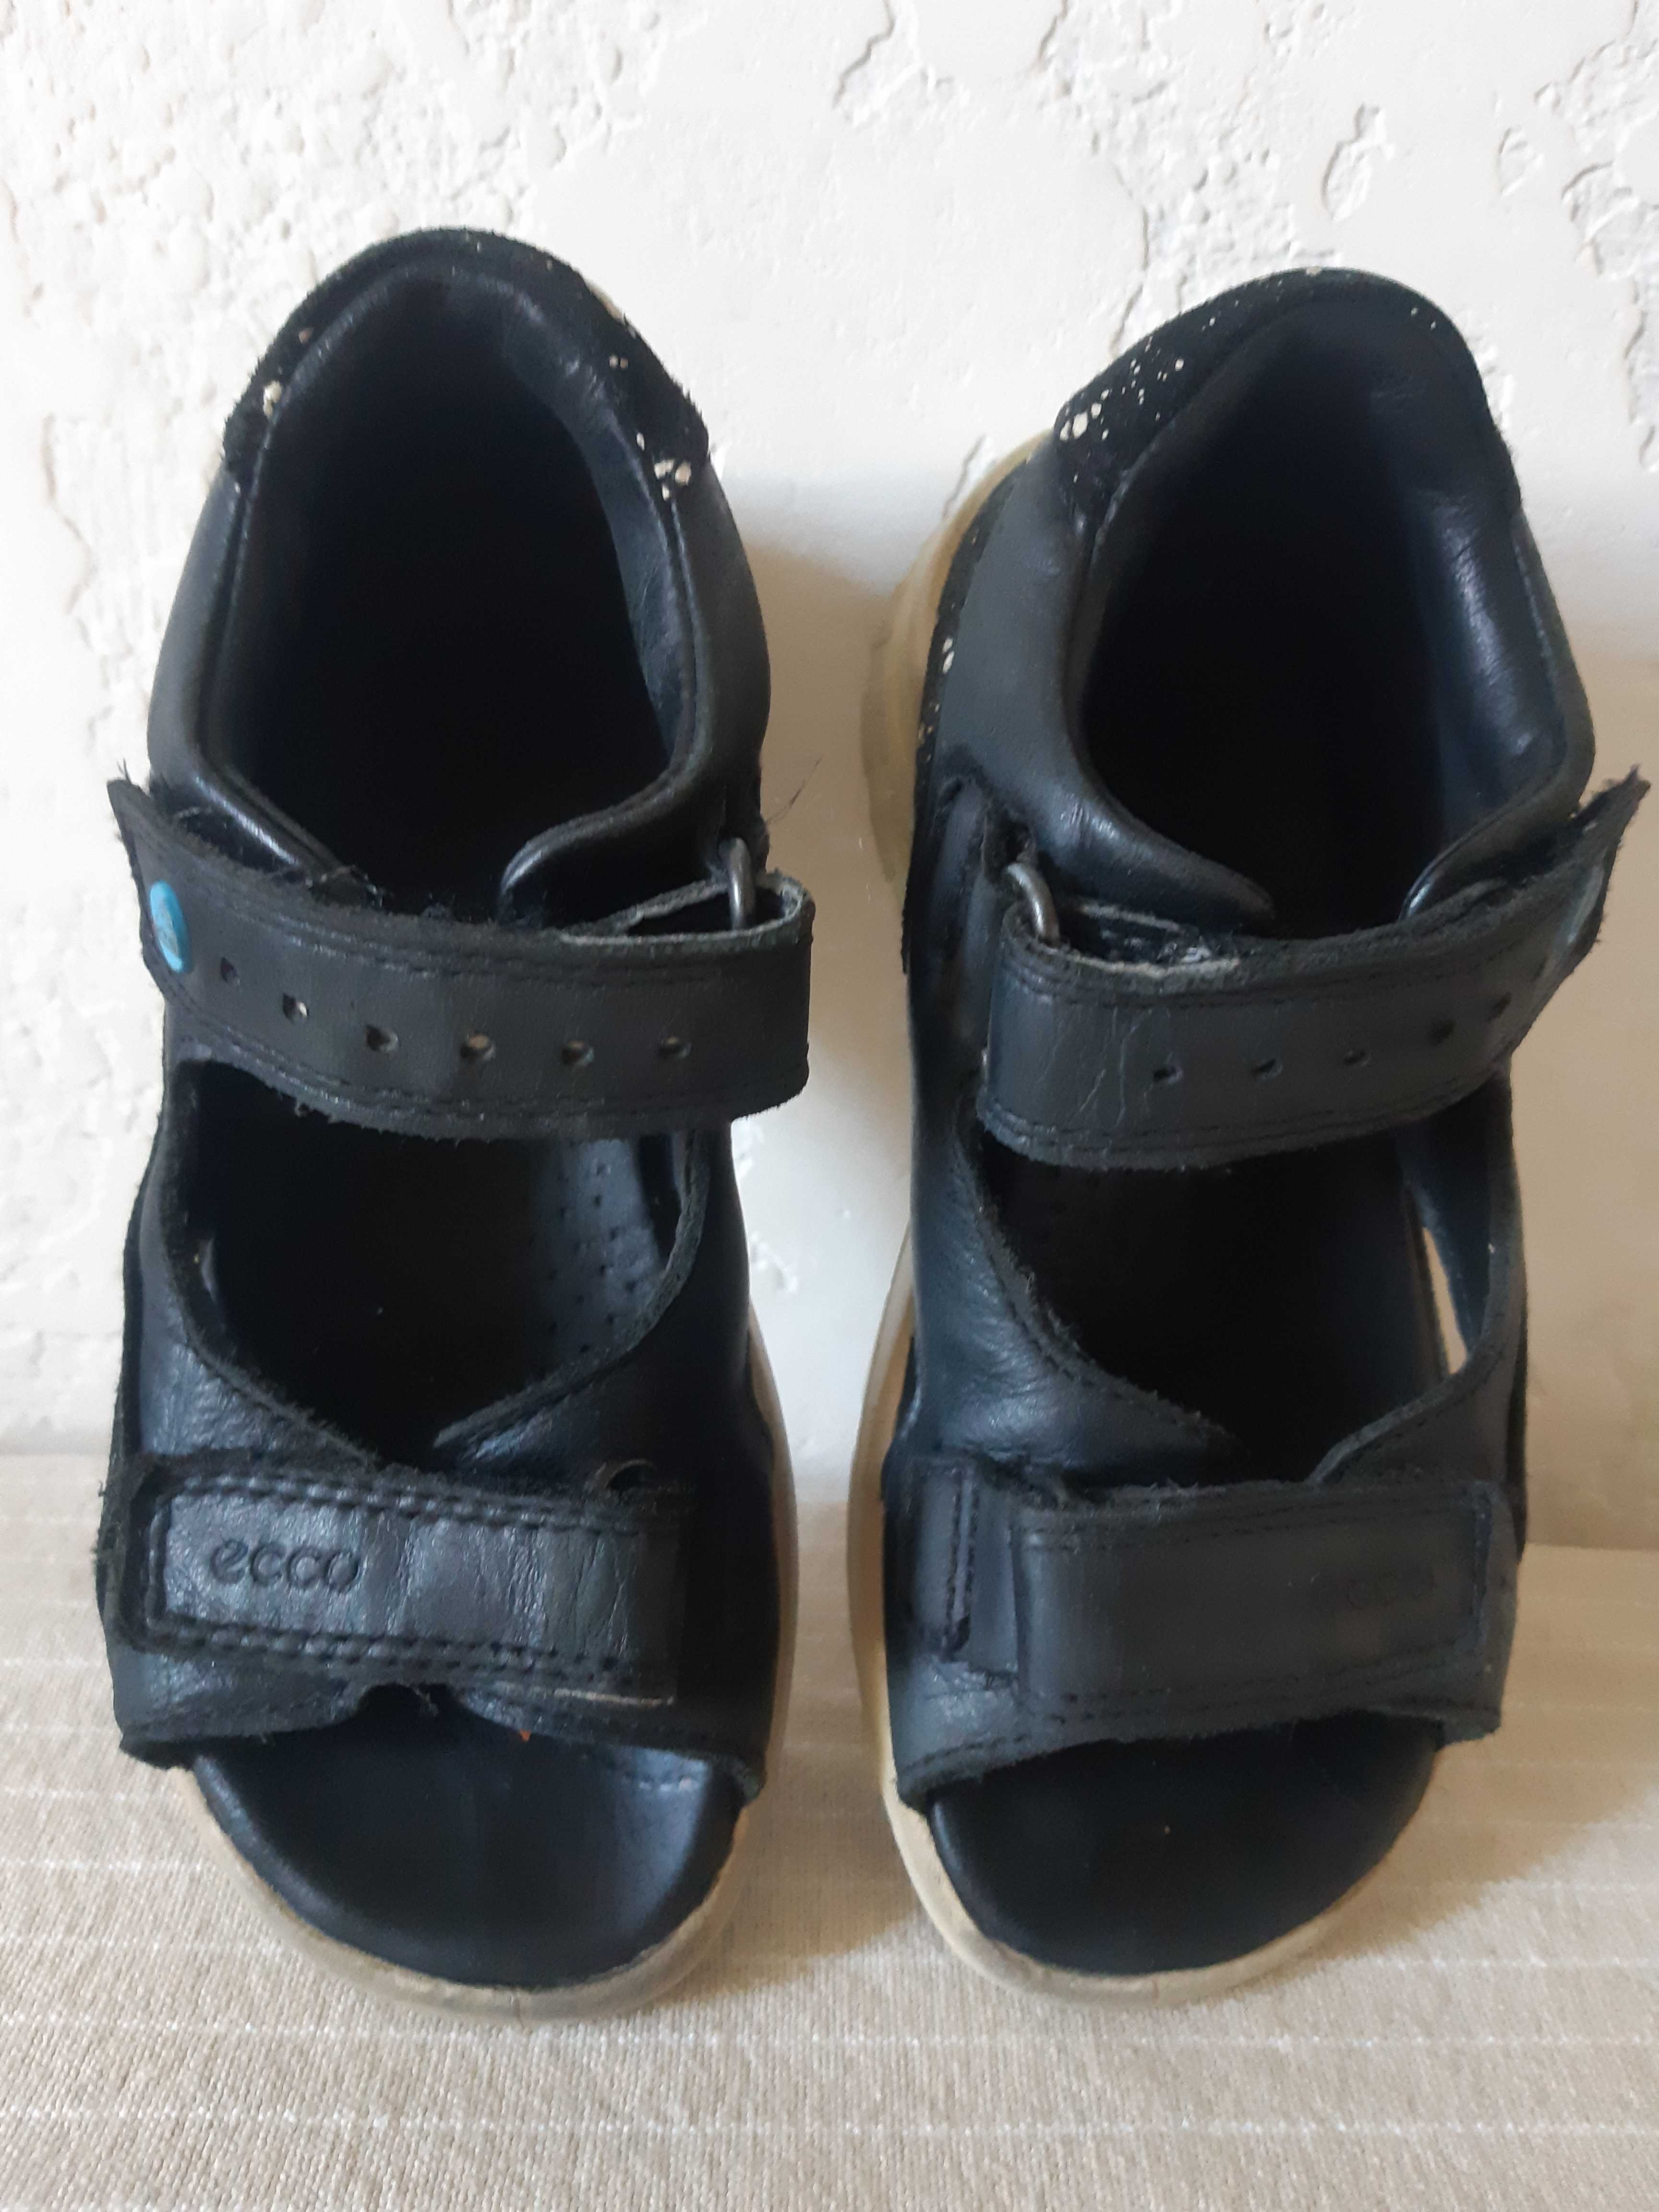 Босоножки летняя обувь Ecco для мальчика р. 26 ( стелька 16,2 см)